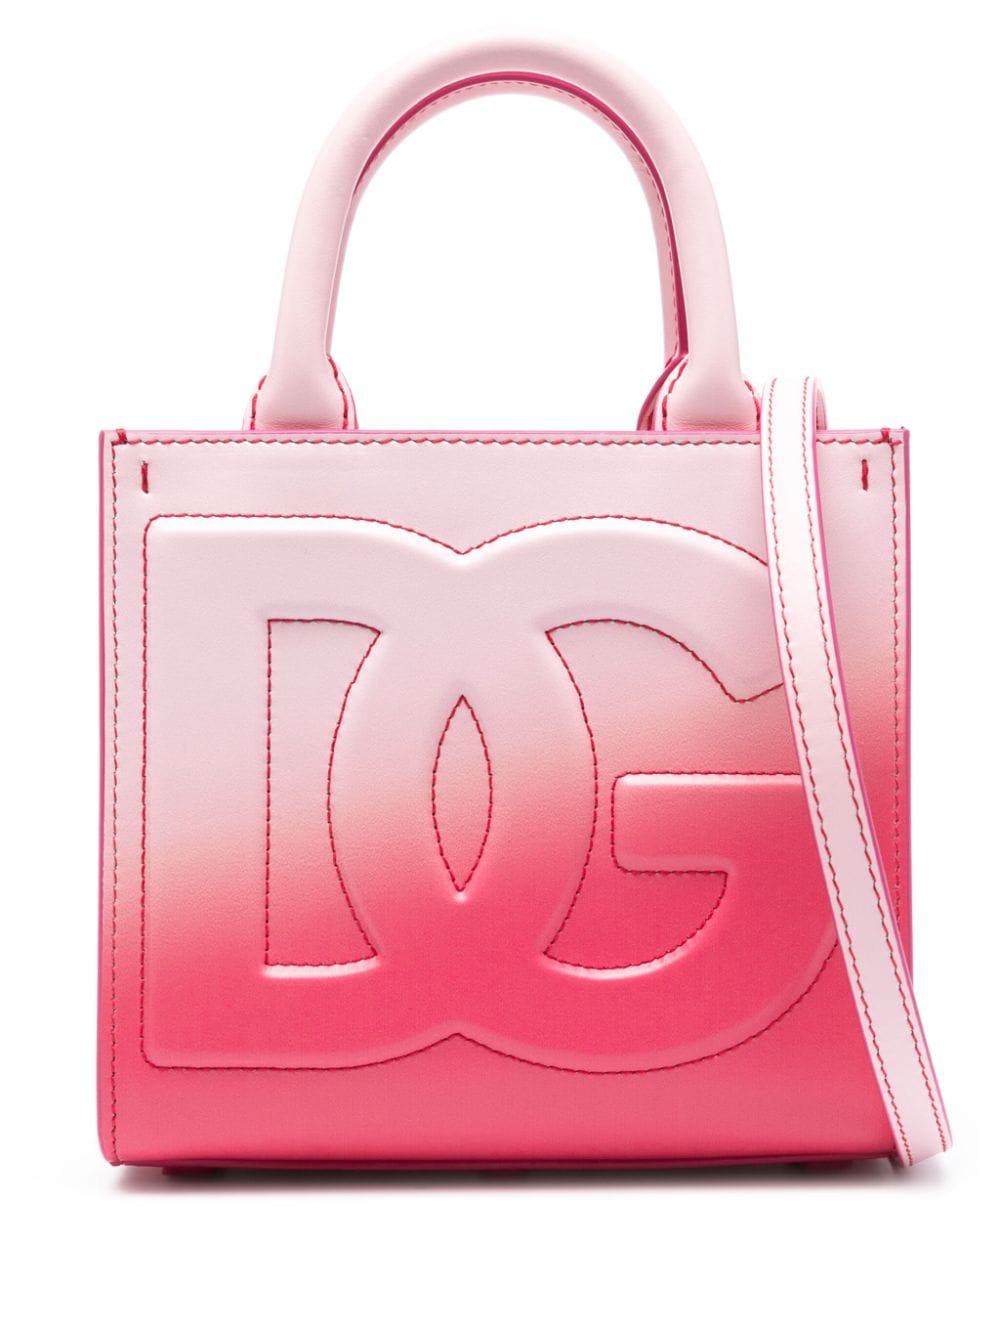 粉色漸層小牛皮手提包帶有DG標誌